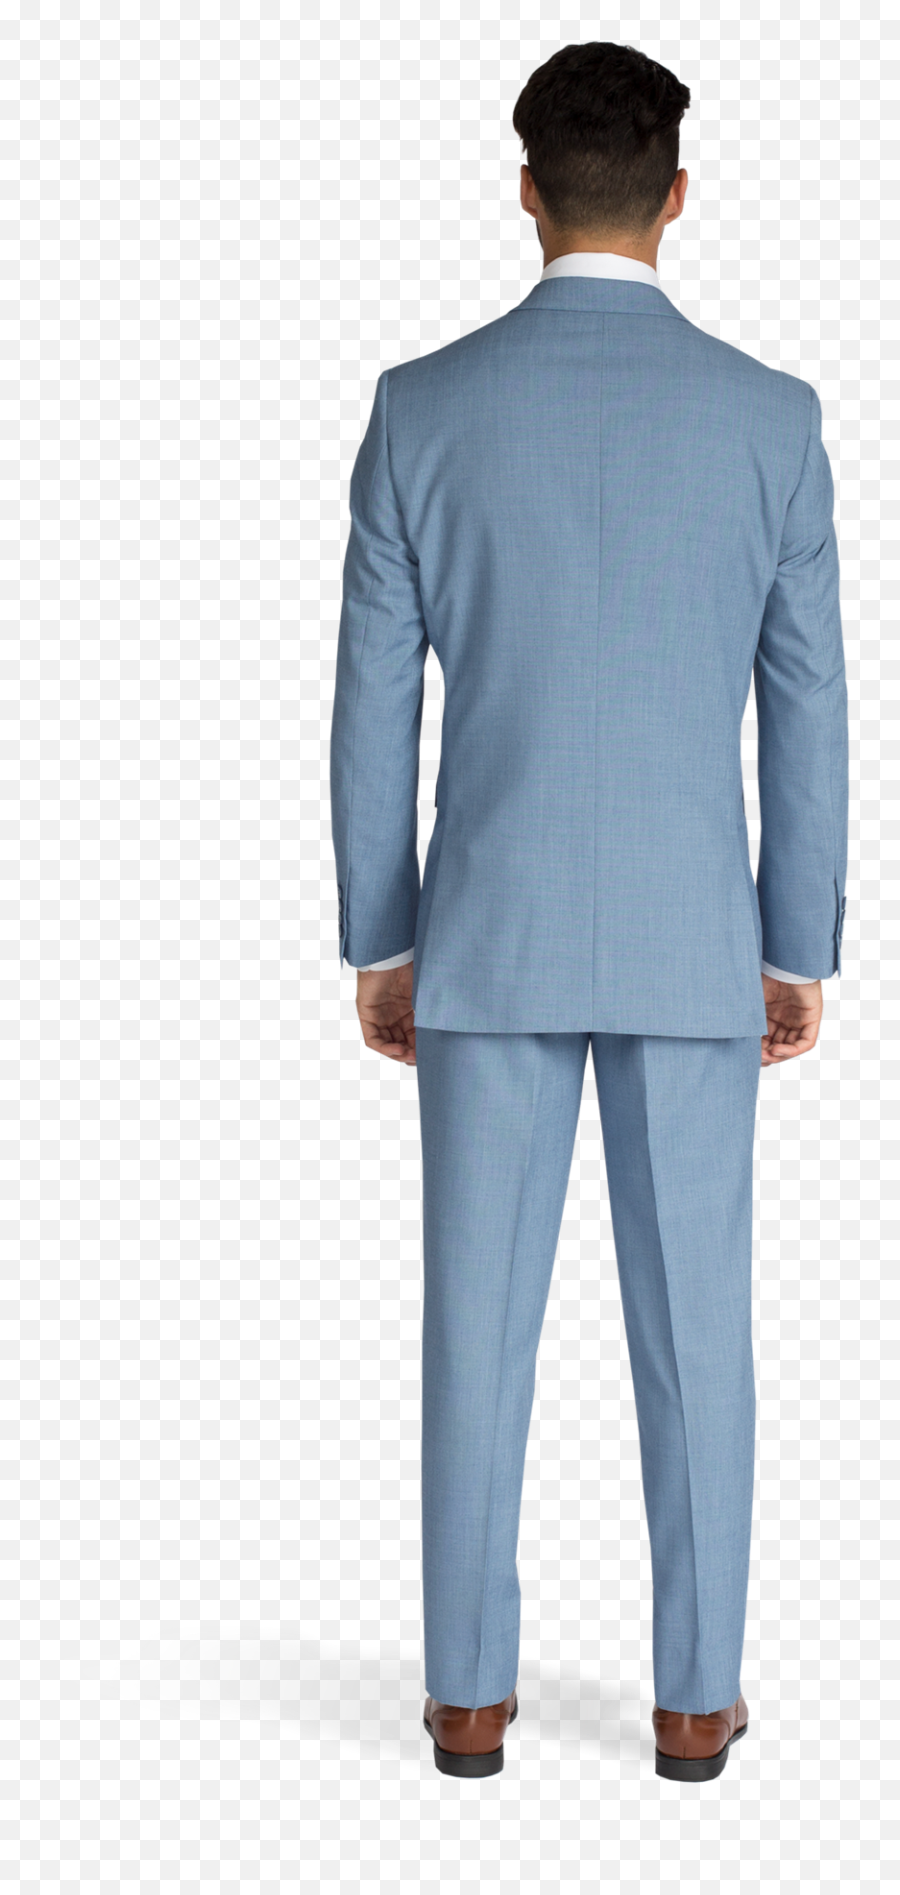 Download Light Blue Suit Back View - Men Suit Back View Png,Man In Suit Transparent Background